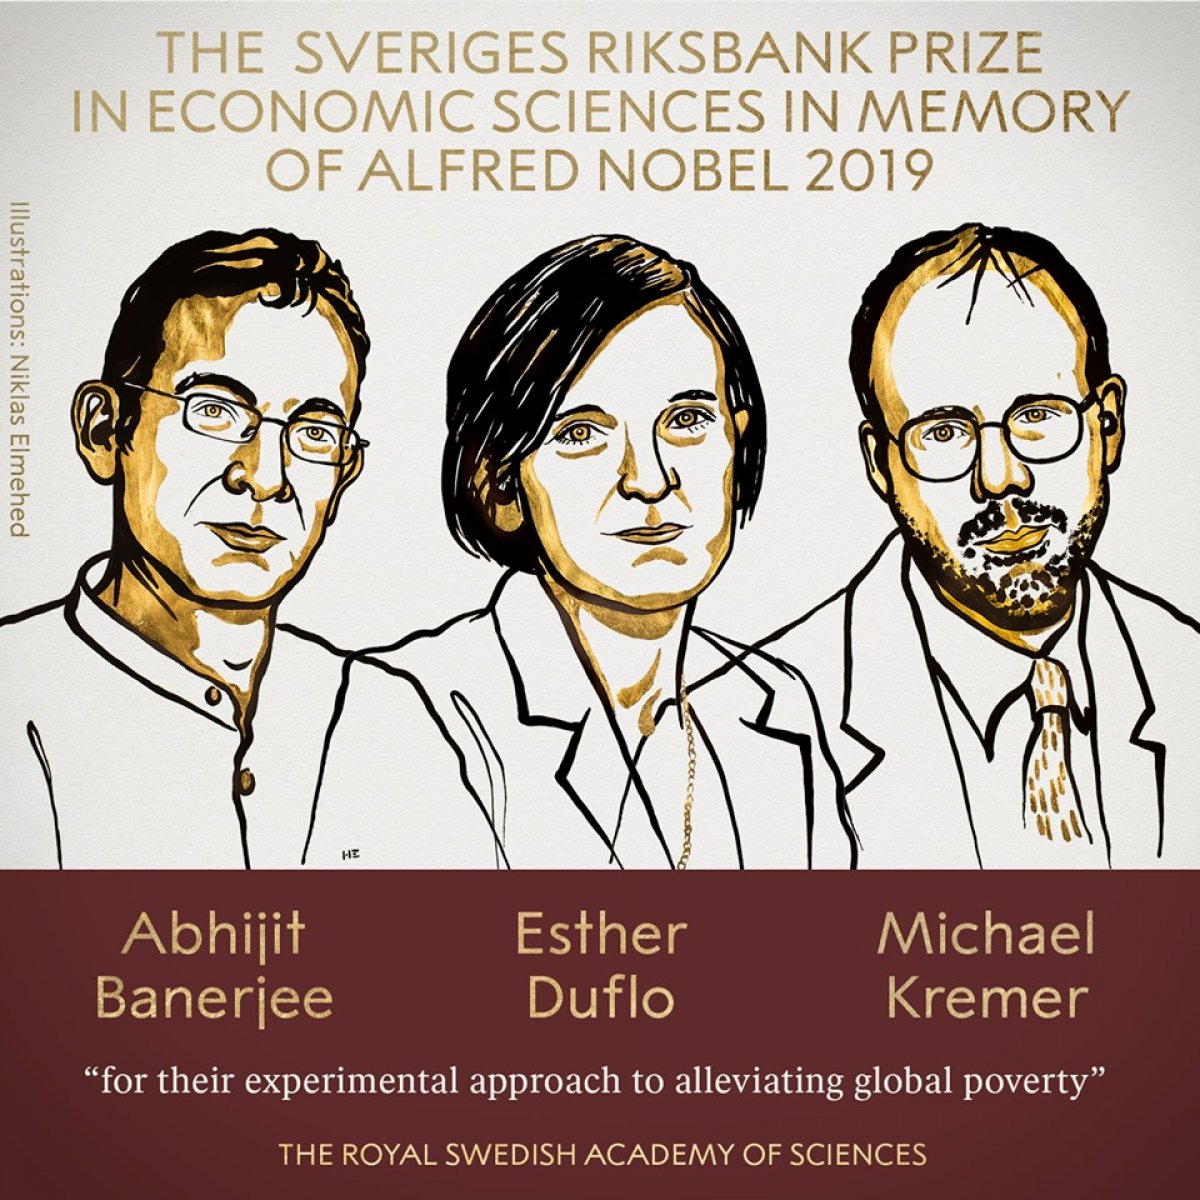 Нобелевскую премию по экономике в этом году получили Абхиджит Банерджи, Эстер Дюфло и Майкл Кремер за «экспериментальный подход к борьбе с бедностью».